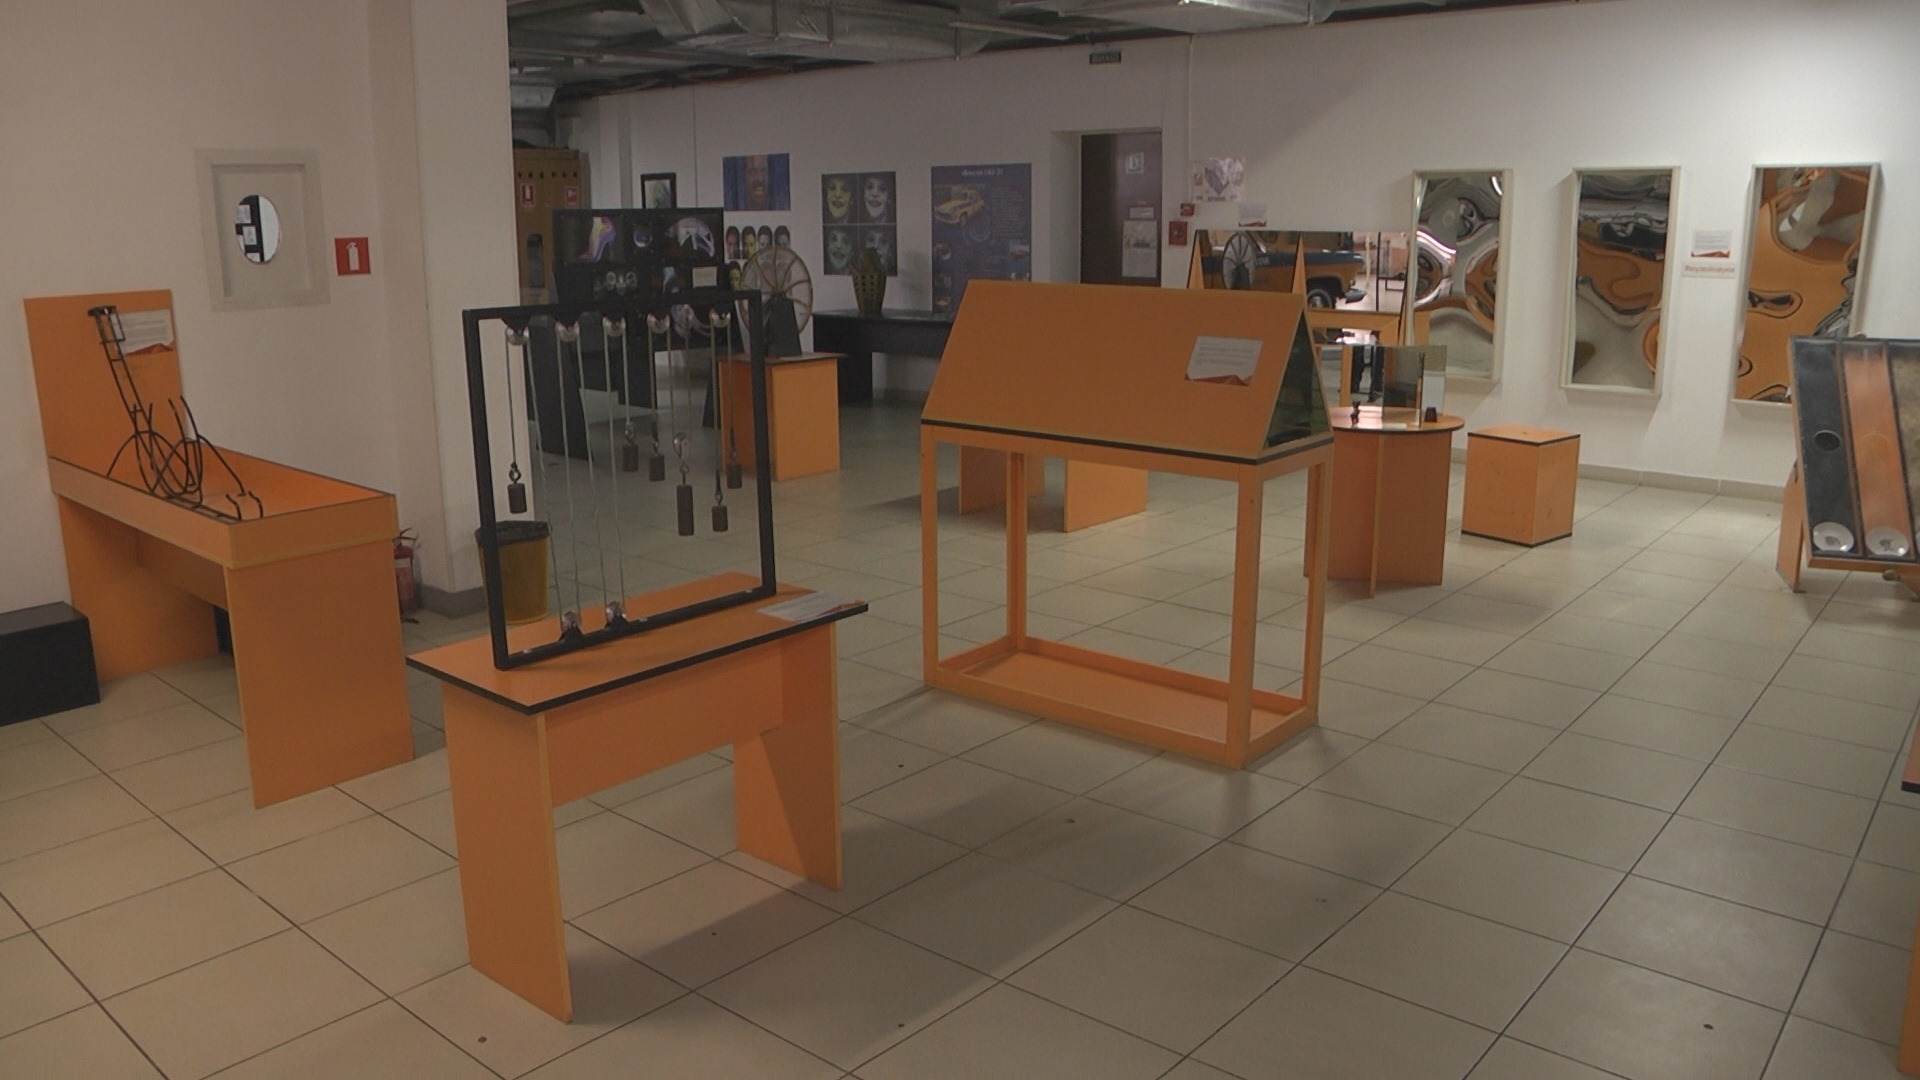 Через пандемію "Музей Науки" у Вінниці опинився на межі закриття